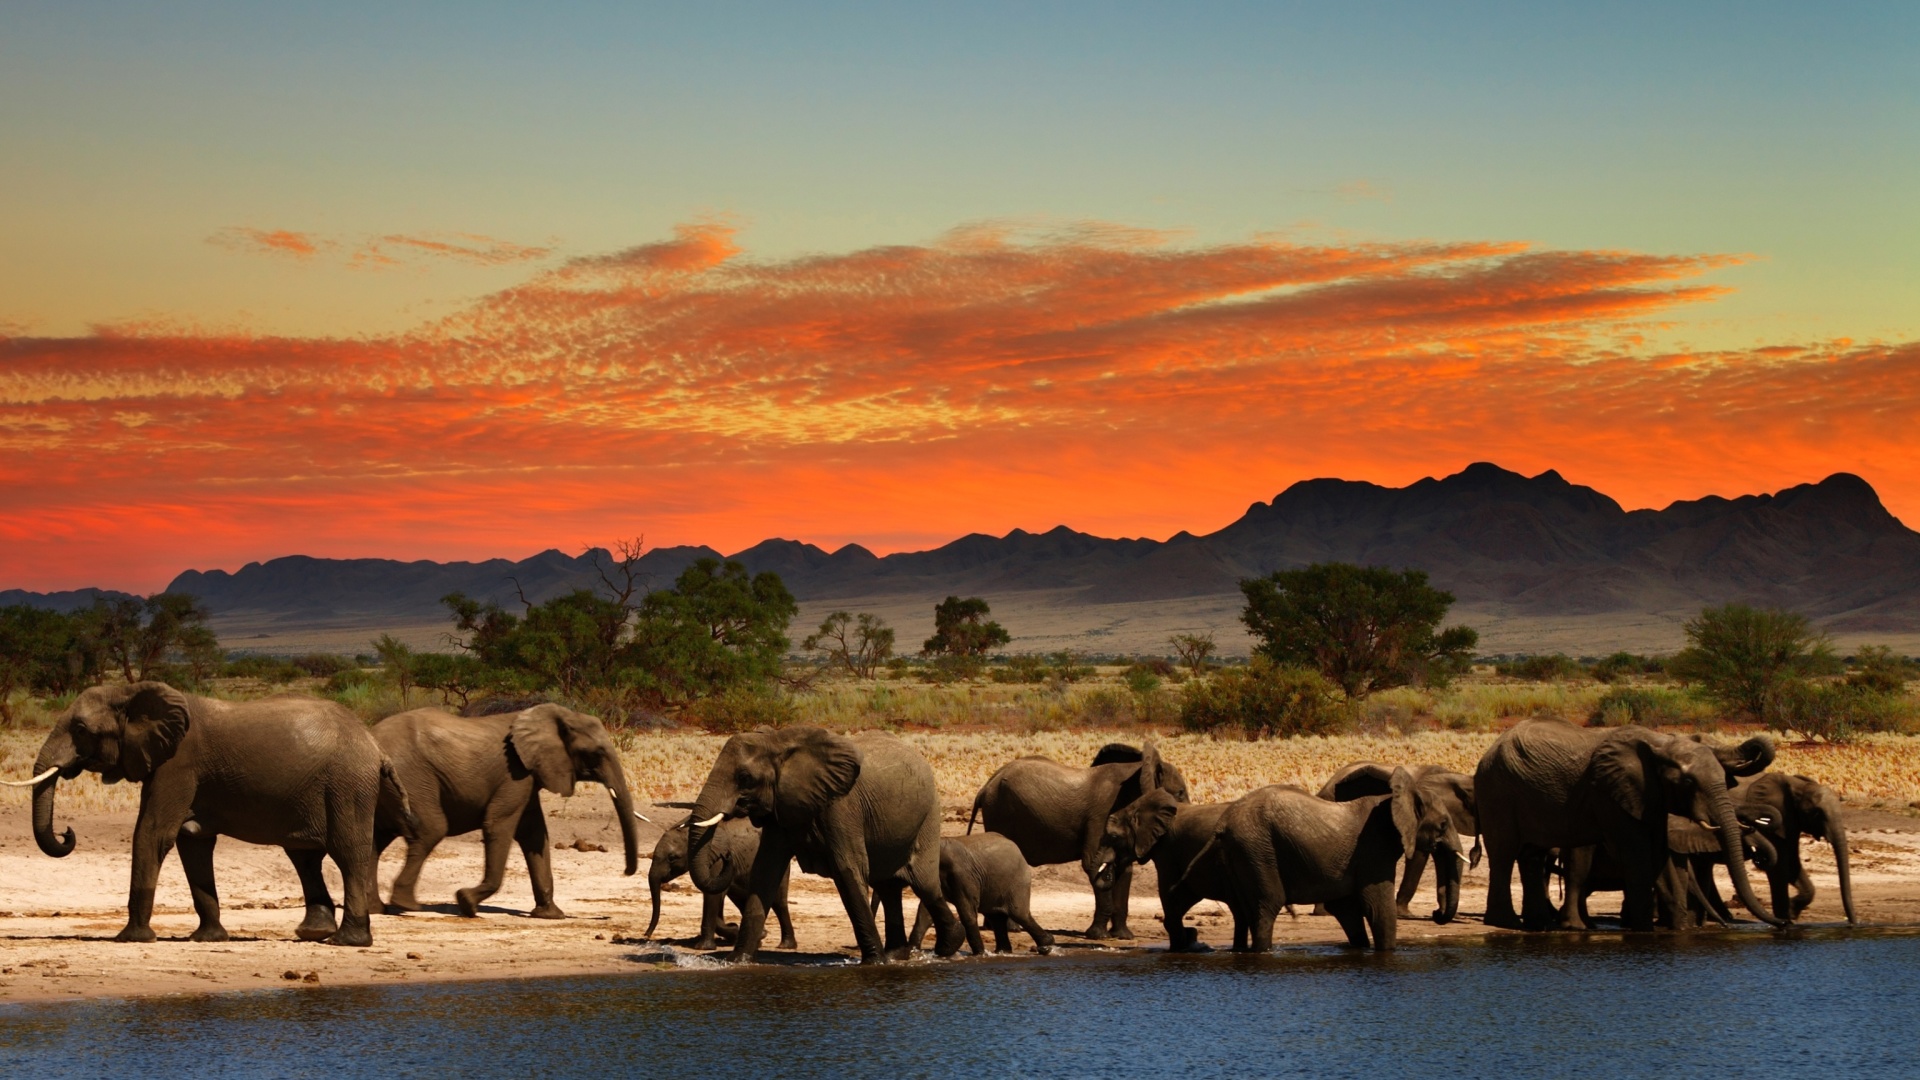 Herd of elephants Safari wallpaper 1920x1080